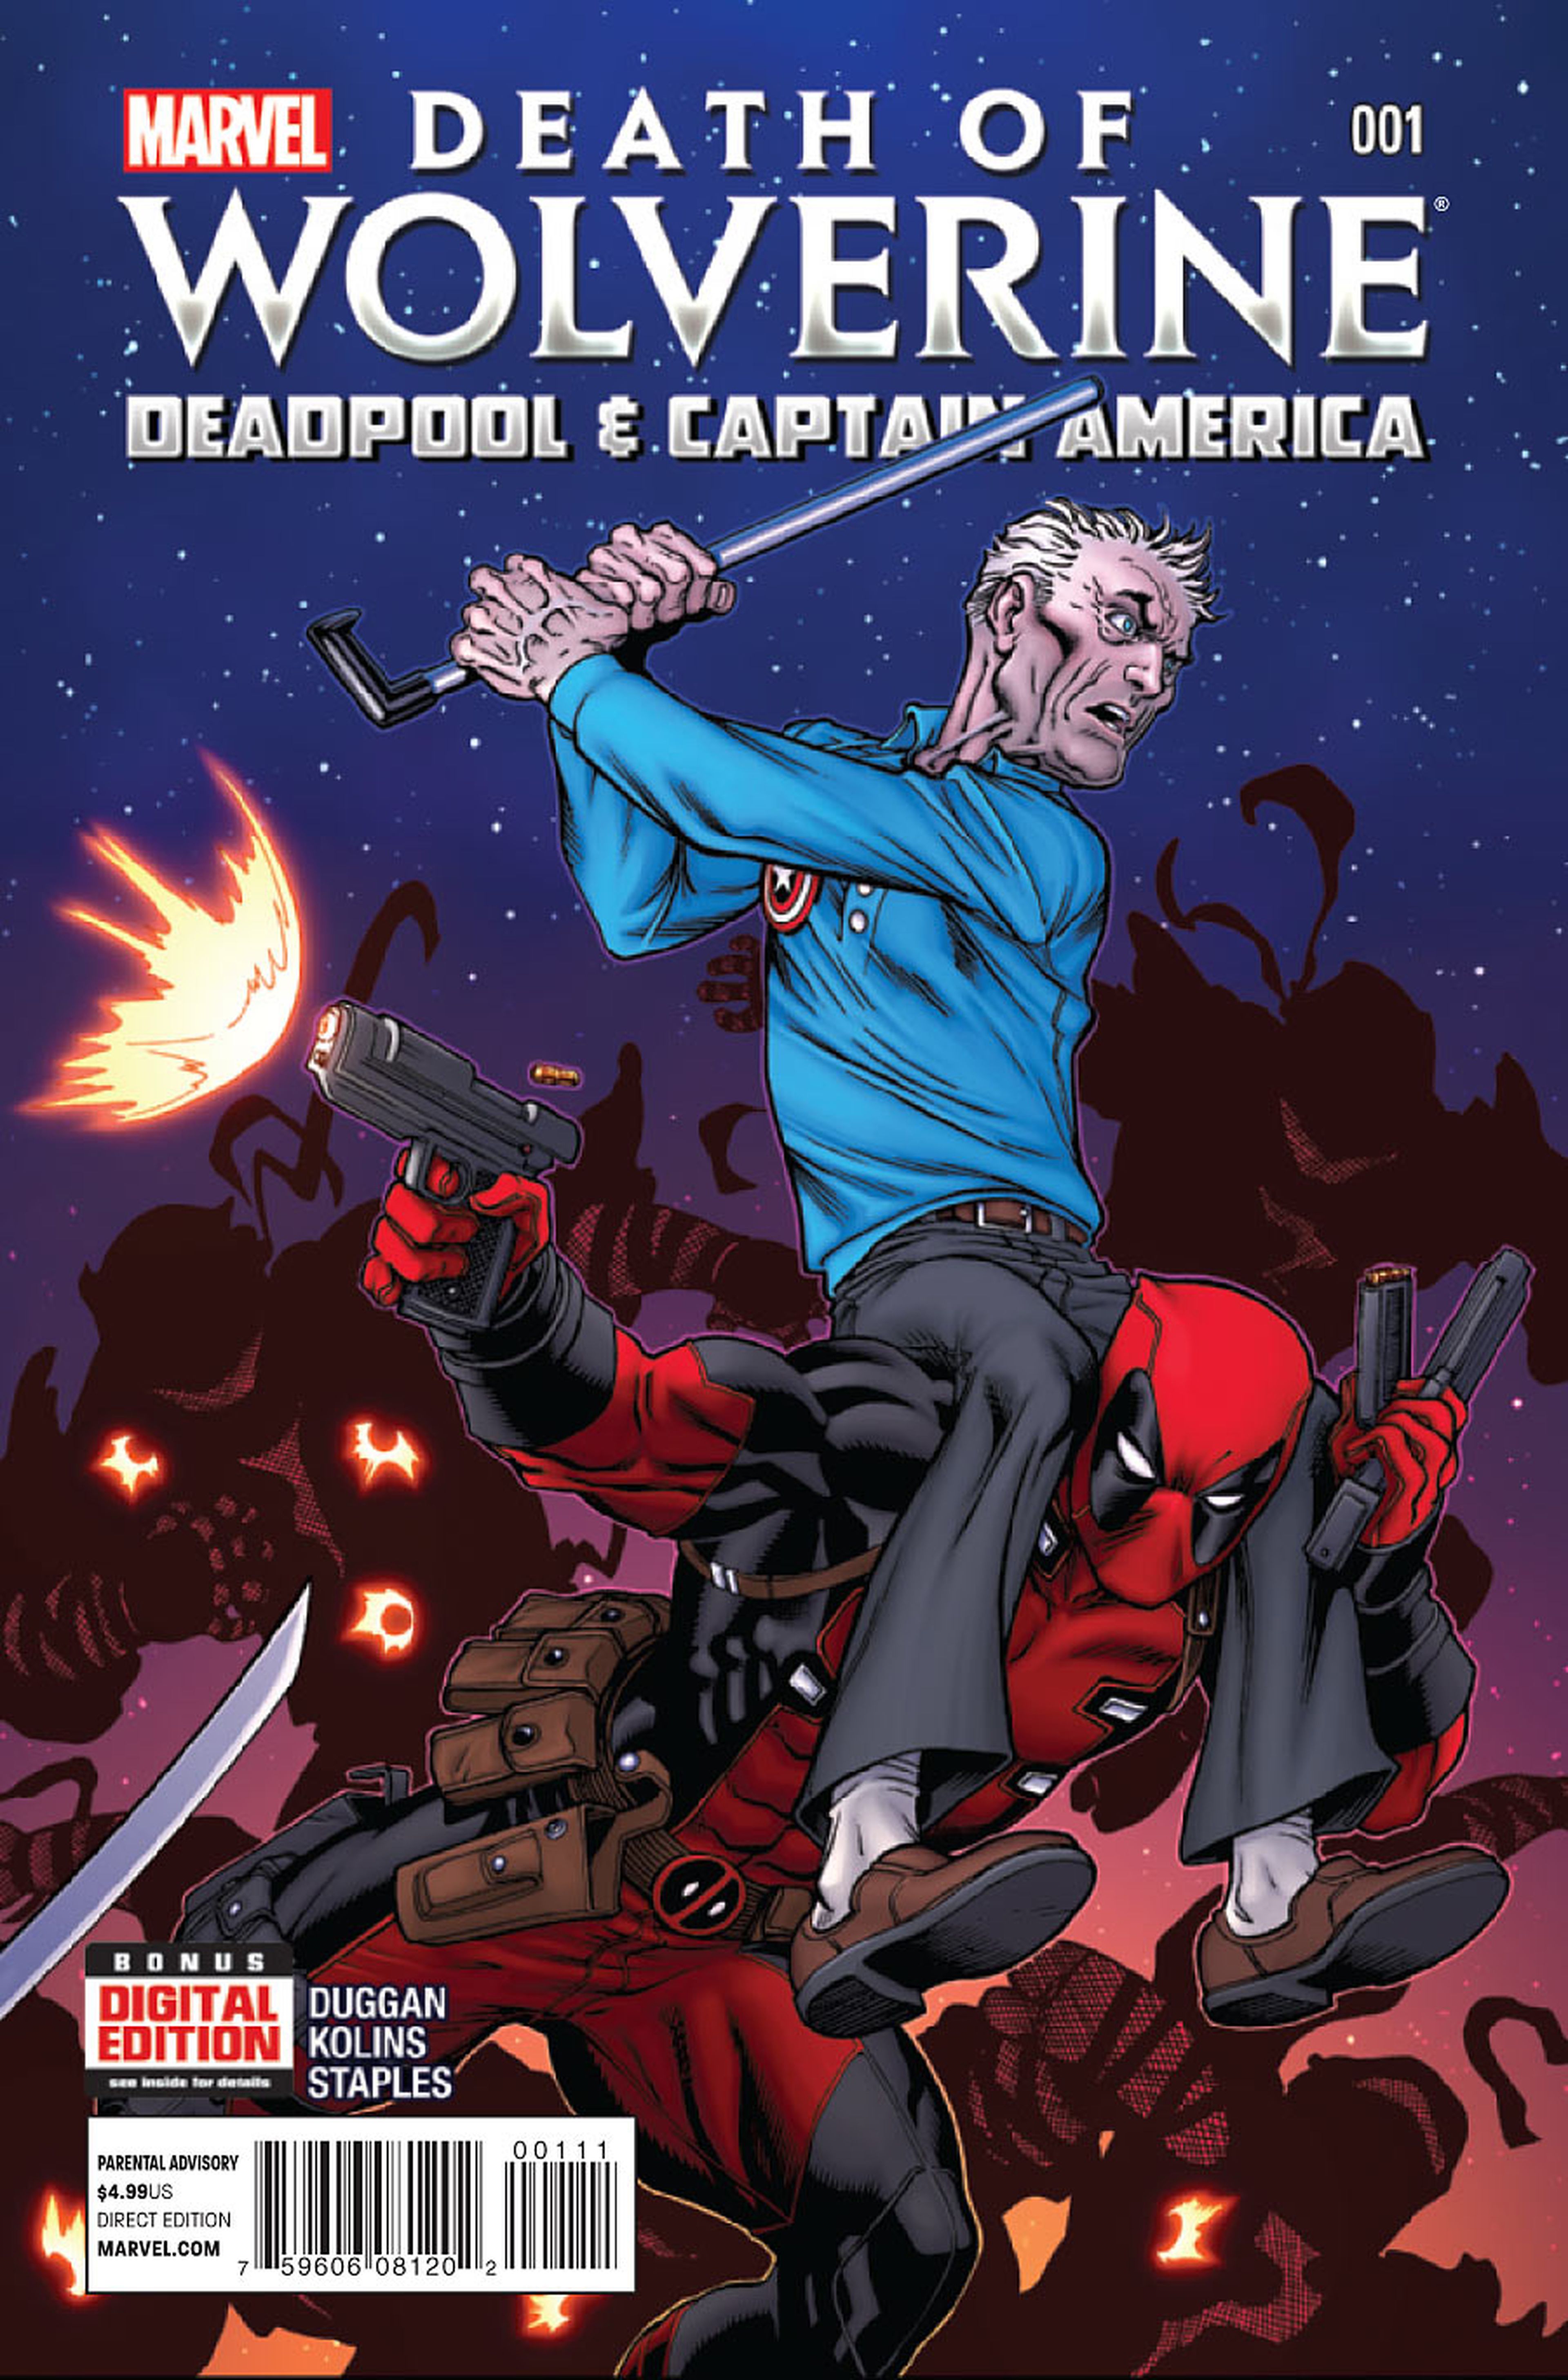 Avance de La Muerte de Lobezno: Masacre y Capitán América